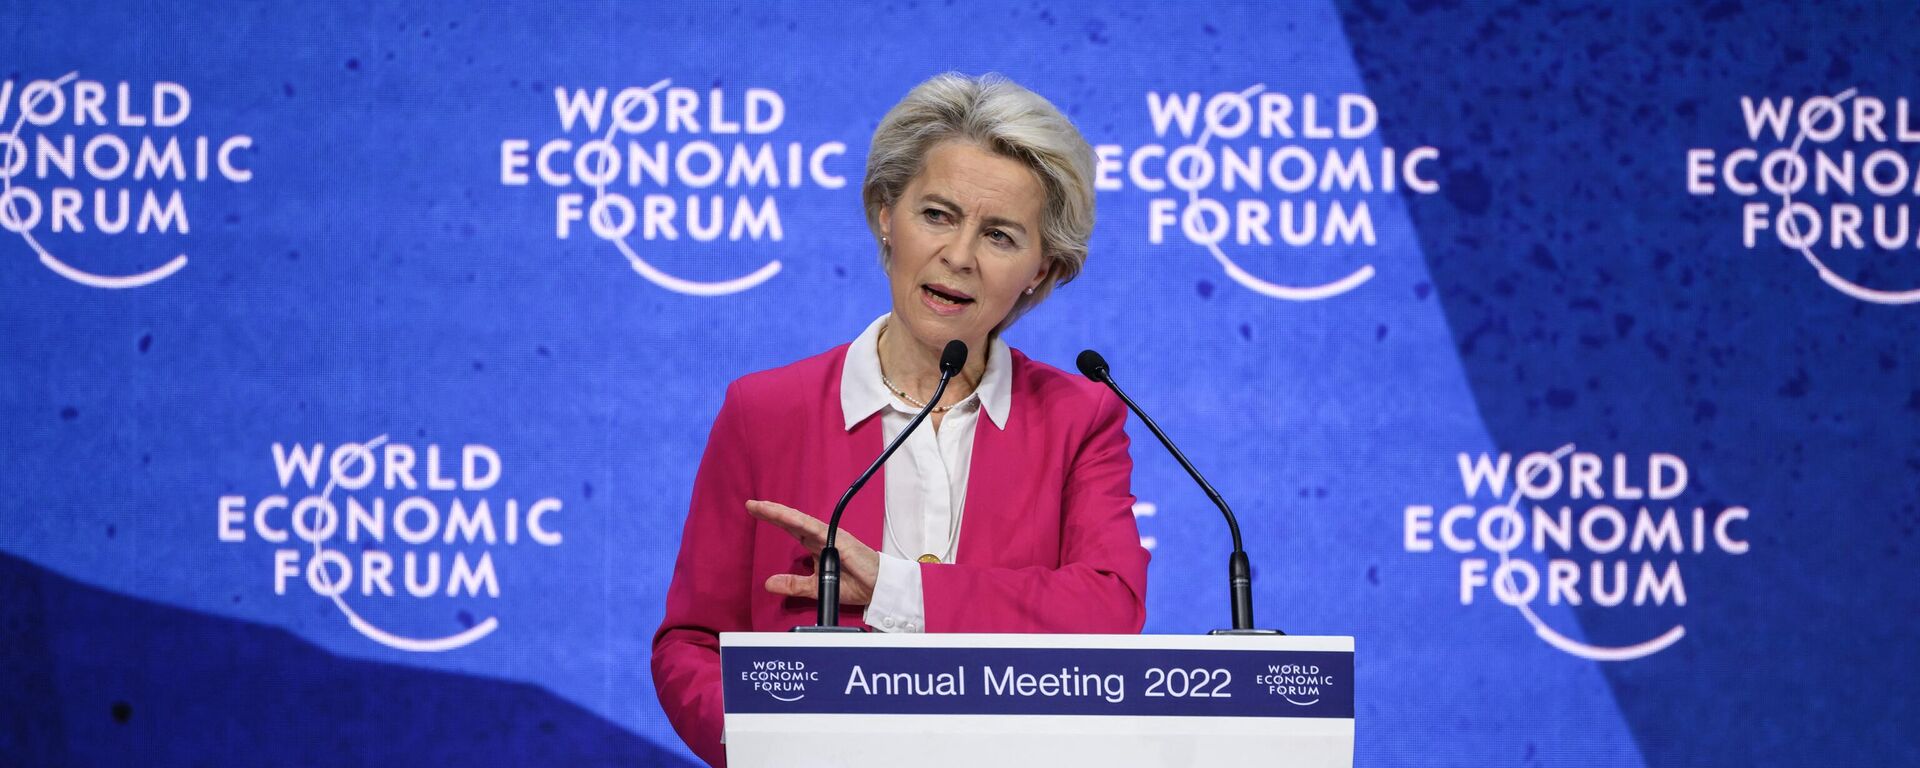 Ursula von der Leyen, presidente da Comissão Europeia, fala durante Fórum Econômico Mundial (WEF, na sigla em inglês) em Davos, Suíça, 24 de maio de 2022 - Sputnik Brasil, 1920, 24.05.2022